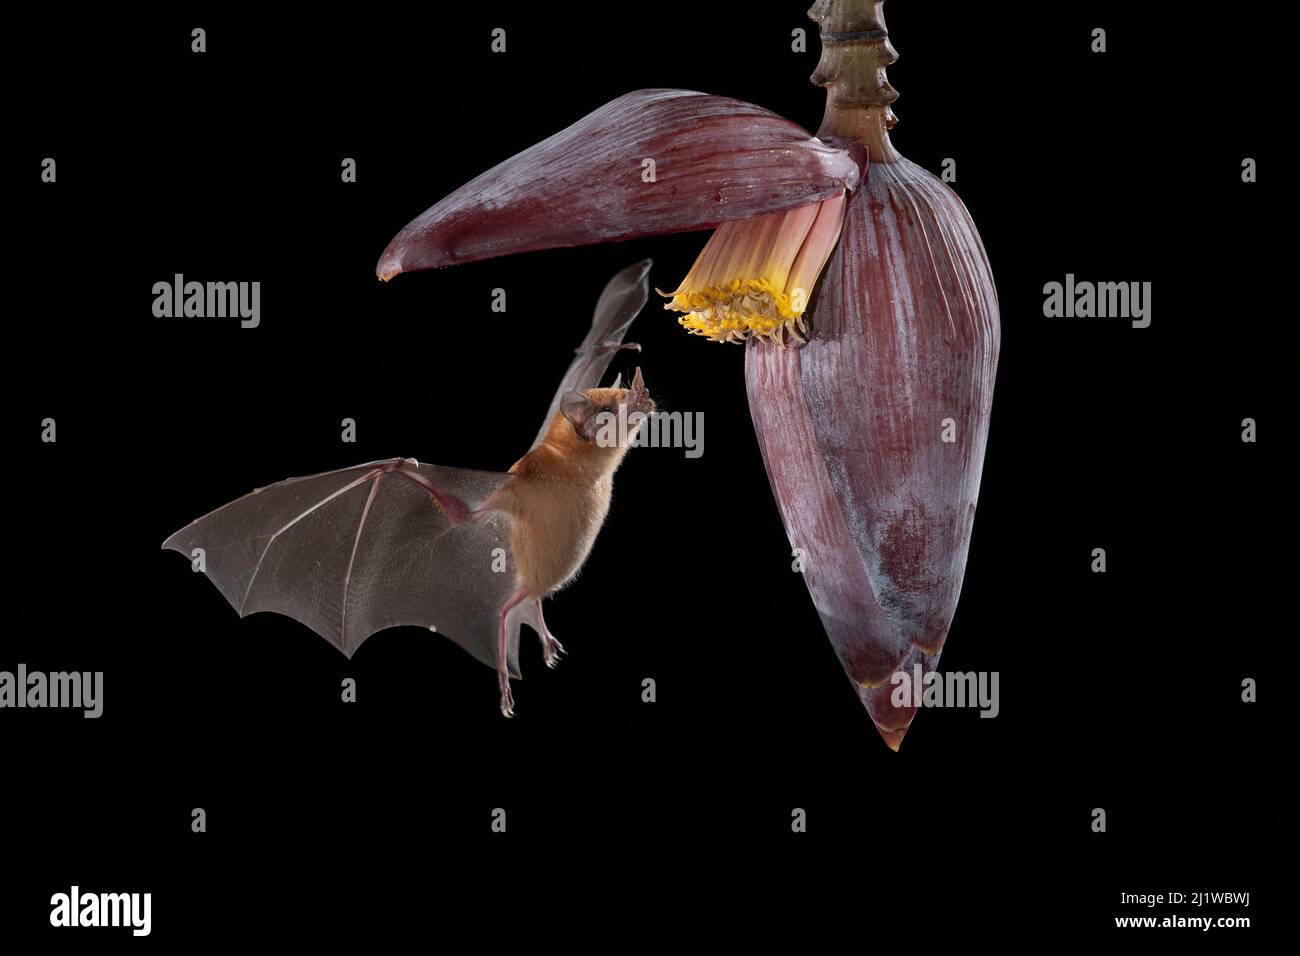 Chauve-souris à nectar d'orange (Lonchophylla robusta) se nourrissant d'une fleur de banane, forêt pluviale des plaines, Costa Rica. Novembre. Banque D'Images